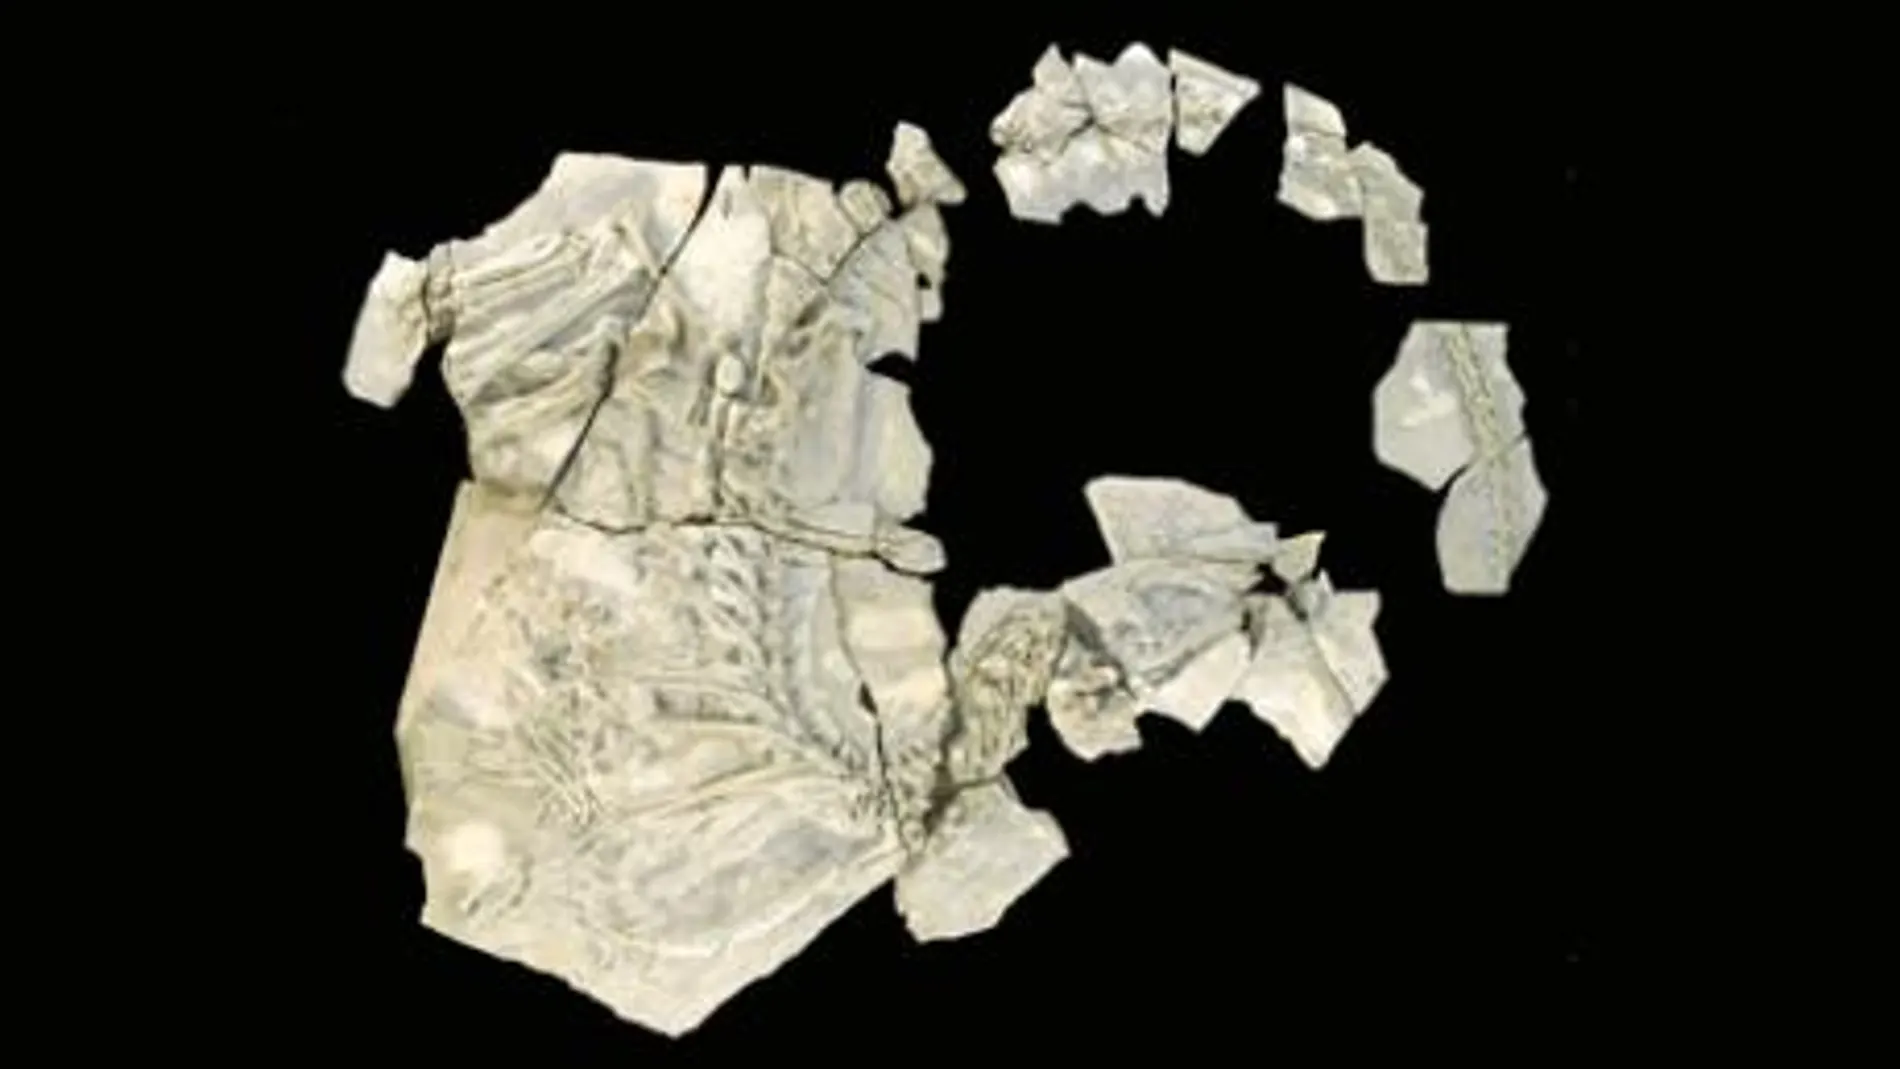 El esqueleto fosilizado es el más completo hallado en España hasta ahora. Su preparación ha sido muy laboriosa para los paleontólogos